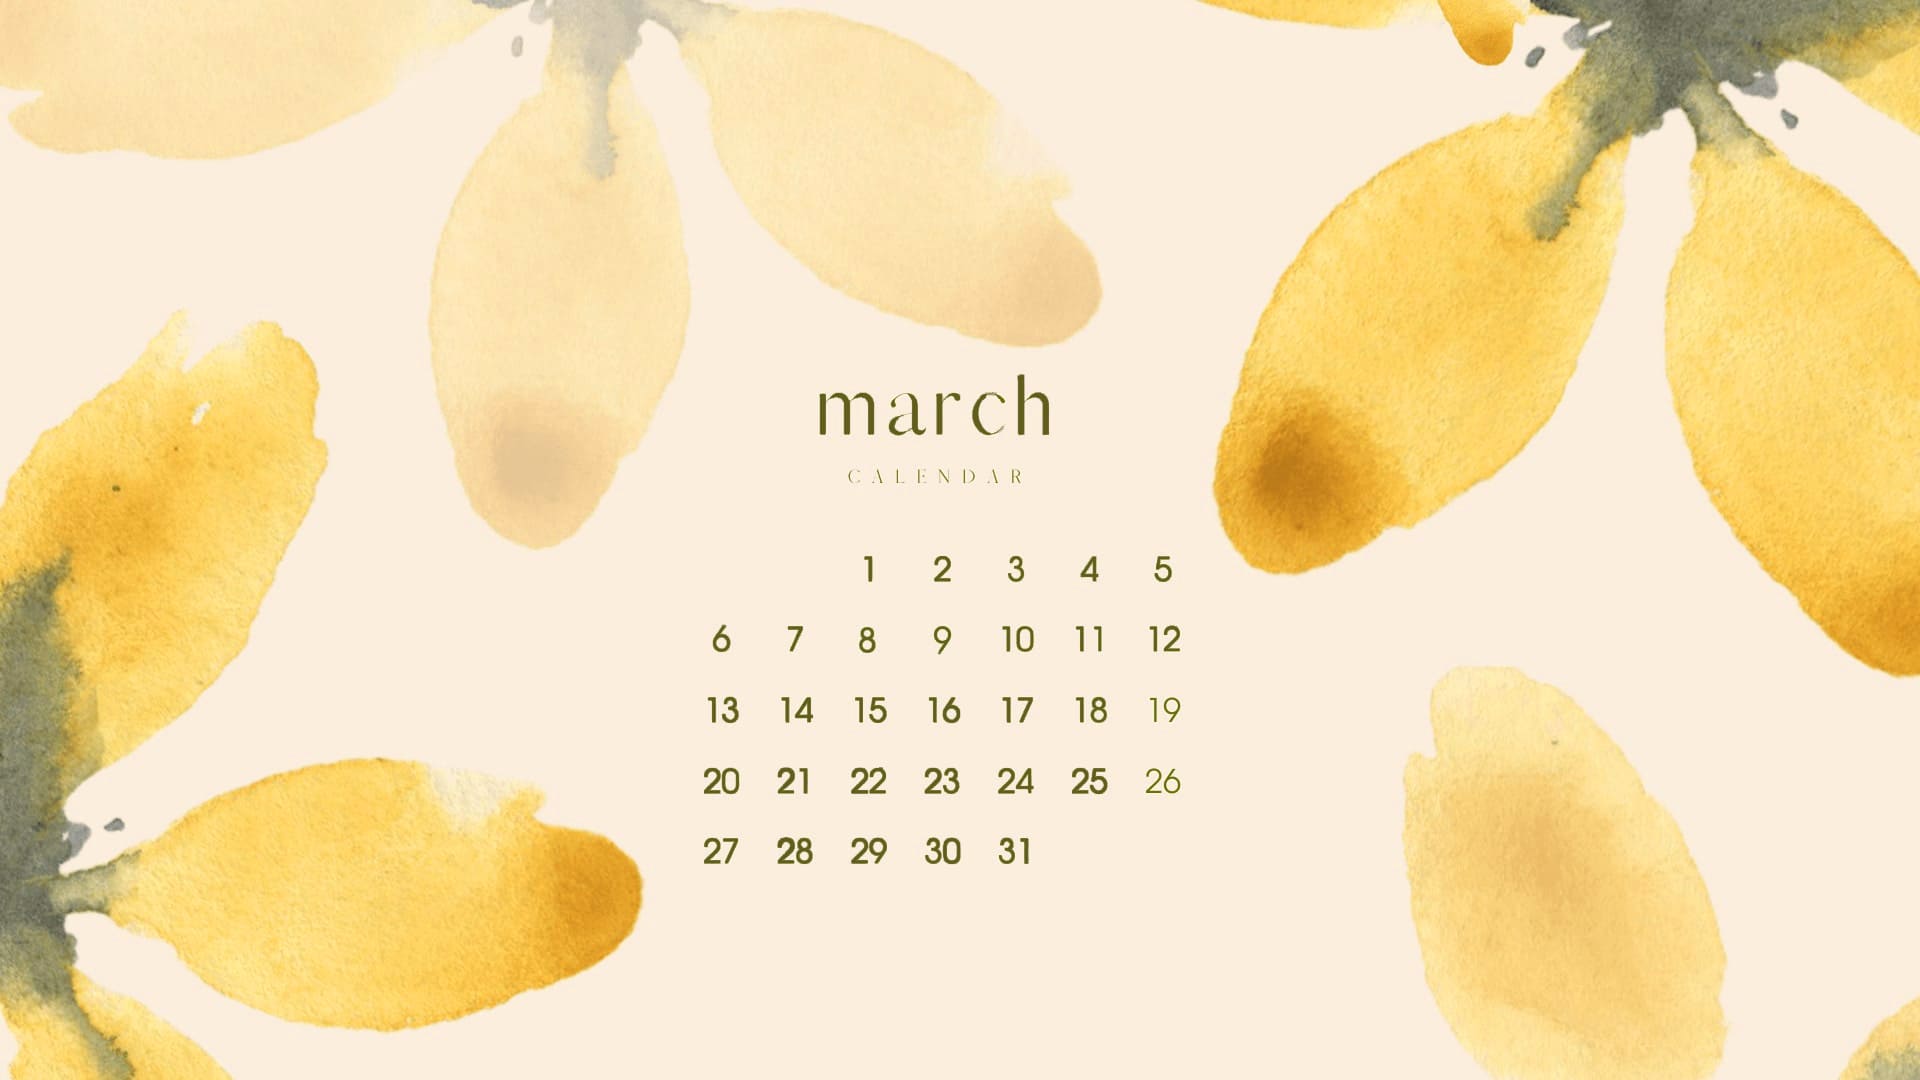 March 2023 Calendar Wallpapers